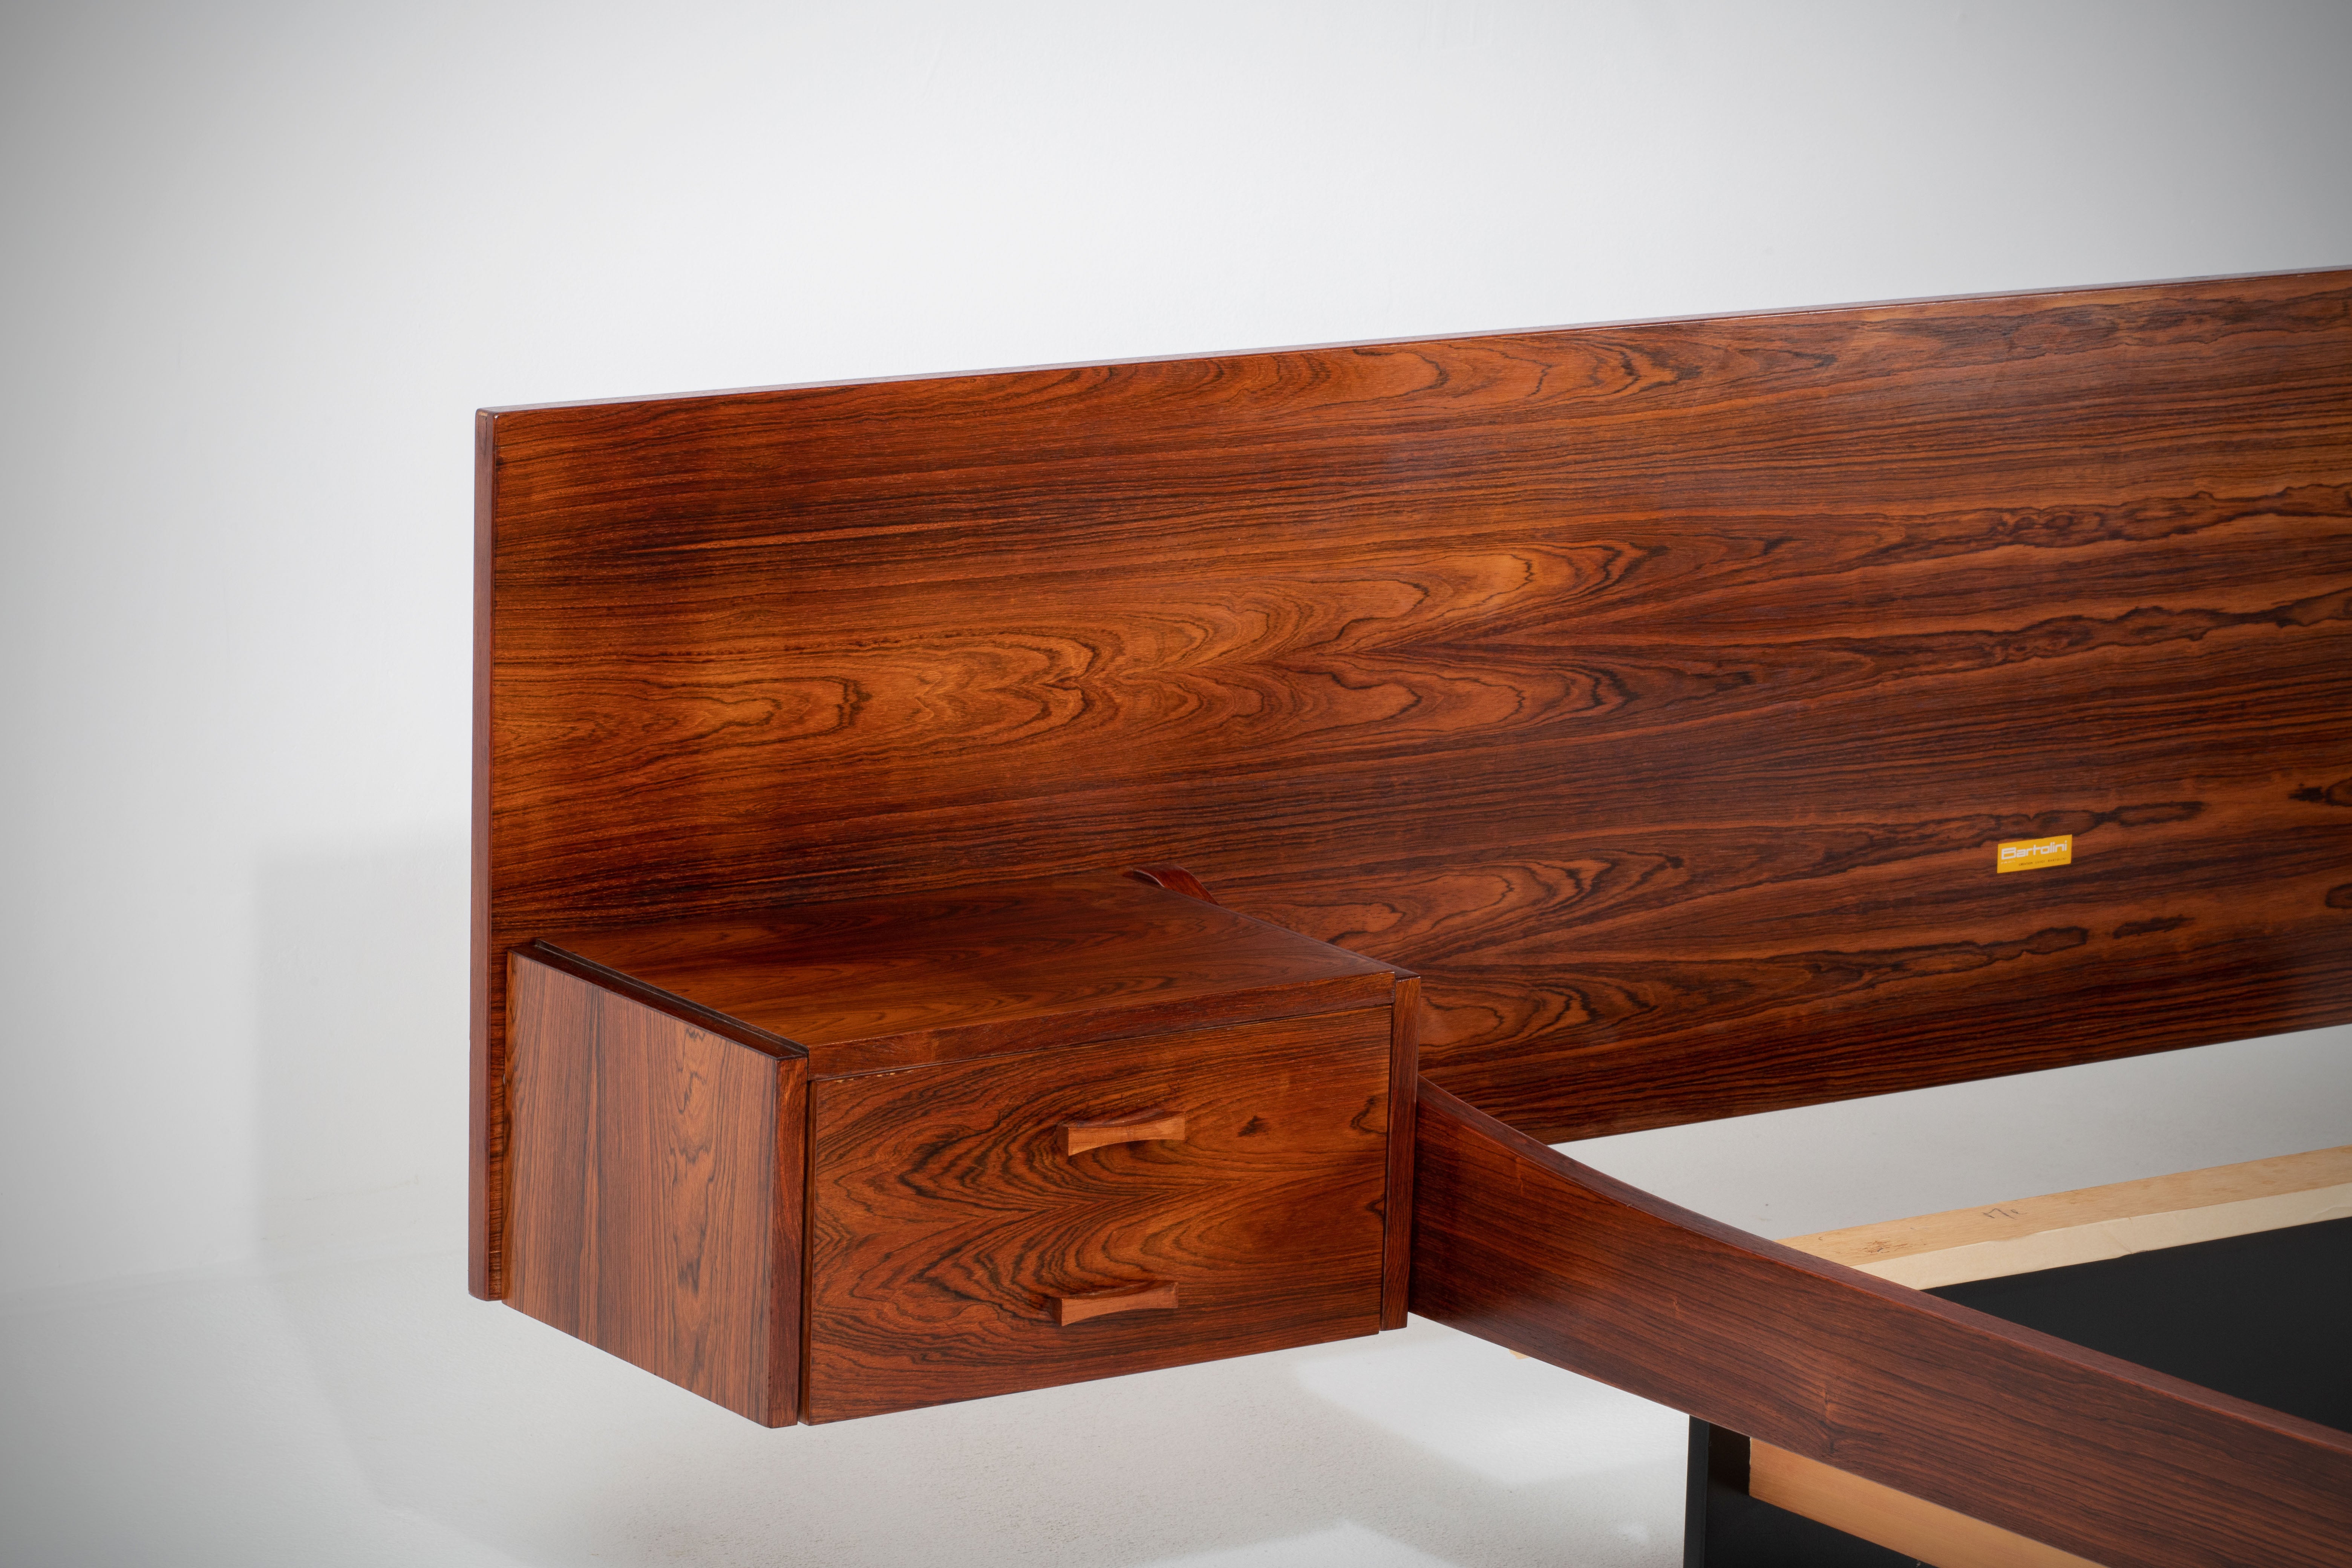 Luigi Bartolini, ein einflussreicher italienischer Möbeldesigner, schuf in den 1960er Jahren ein zeitloses Meisterwerk mit einem atemberaubenden Bettgestell und Kopfteil aus Palisanderholz. Das Bett verfügt über ein charakteristisches, schwebendes